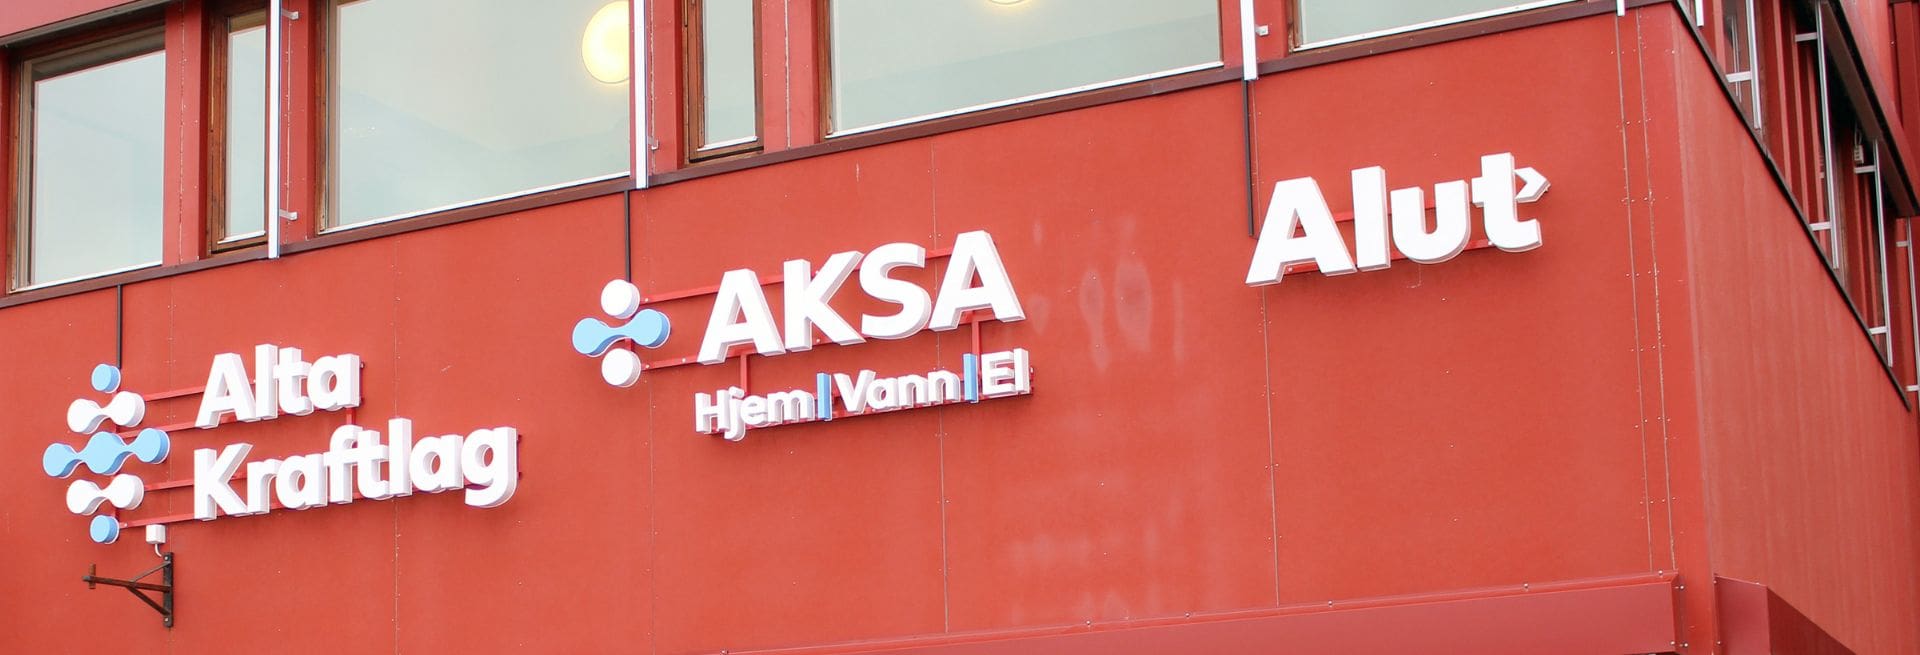 Bilde viser utsiden av lokalet til Alta Kraftlag, og logoene på navnene til selskapene: Alta Kraftlag, Aksa Hjem, Vann, El, og Alut